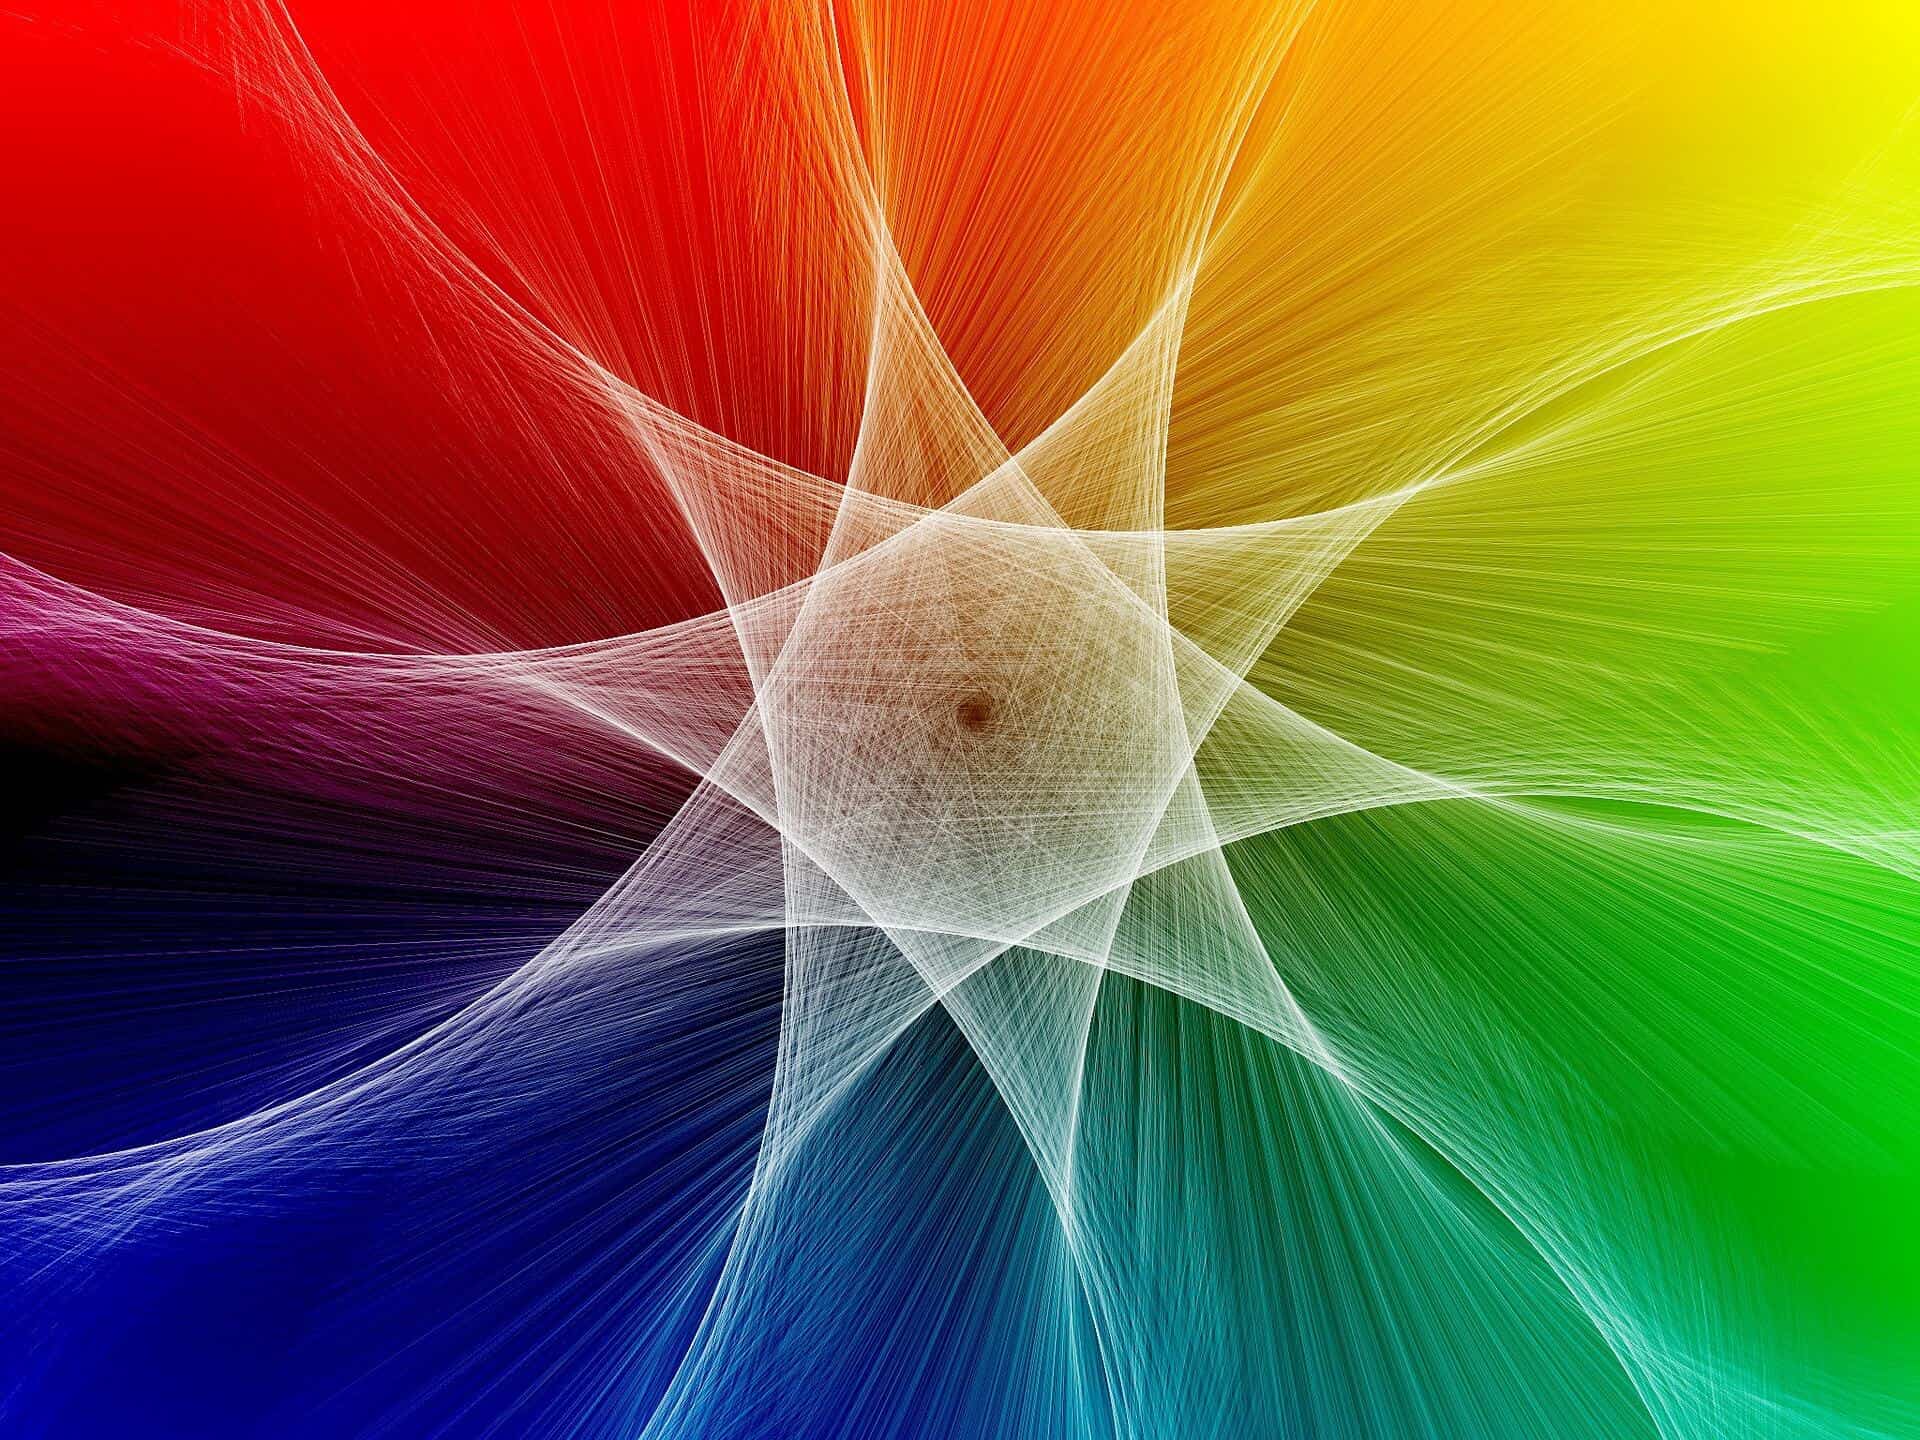 Farby nás ovplyvňujú viac, než si myslíme - abstract 2924732 1920 - Farby nás ovplyvňujú viac, než si myslíme